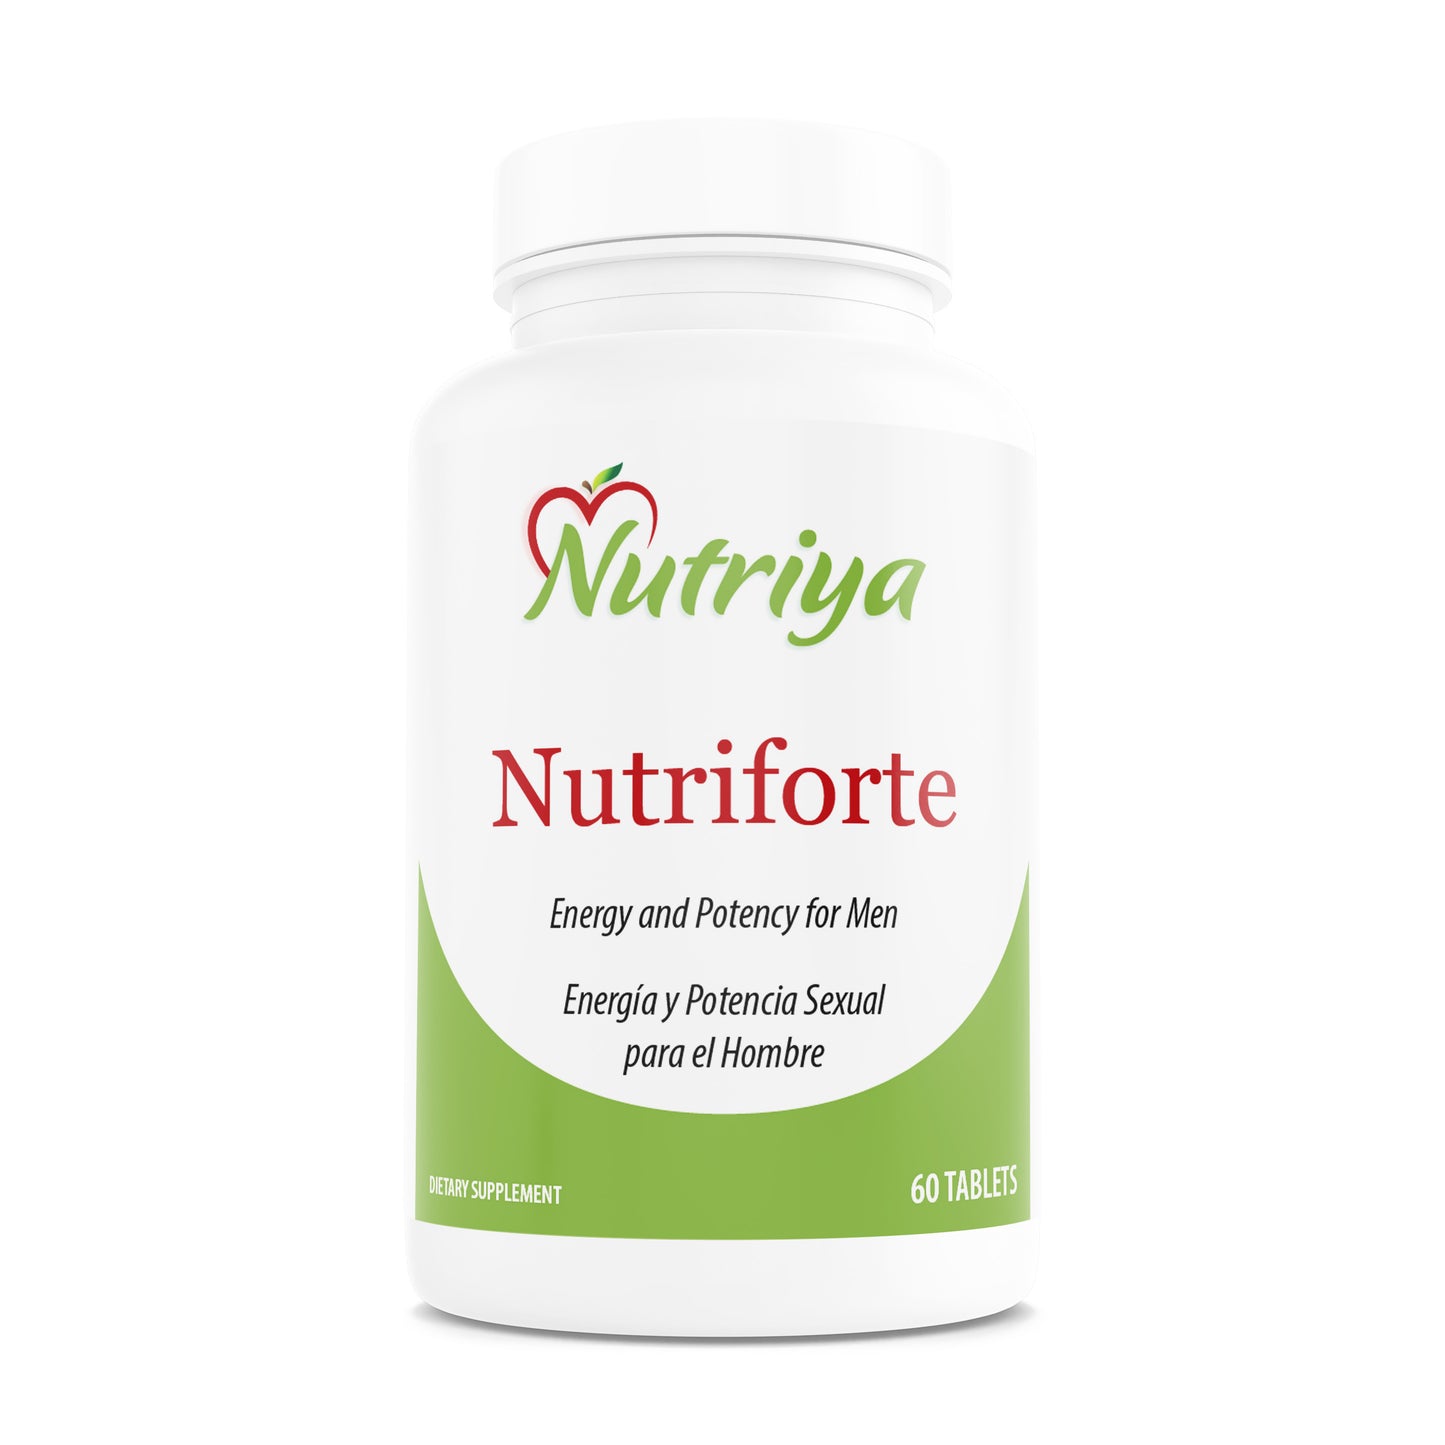 Nutriforte - Supports male energy - ¡Energía y potencia para el hombre!